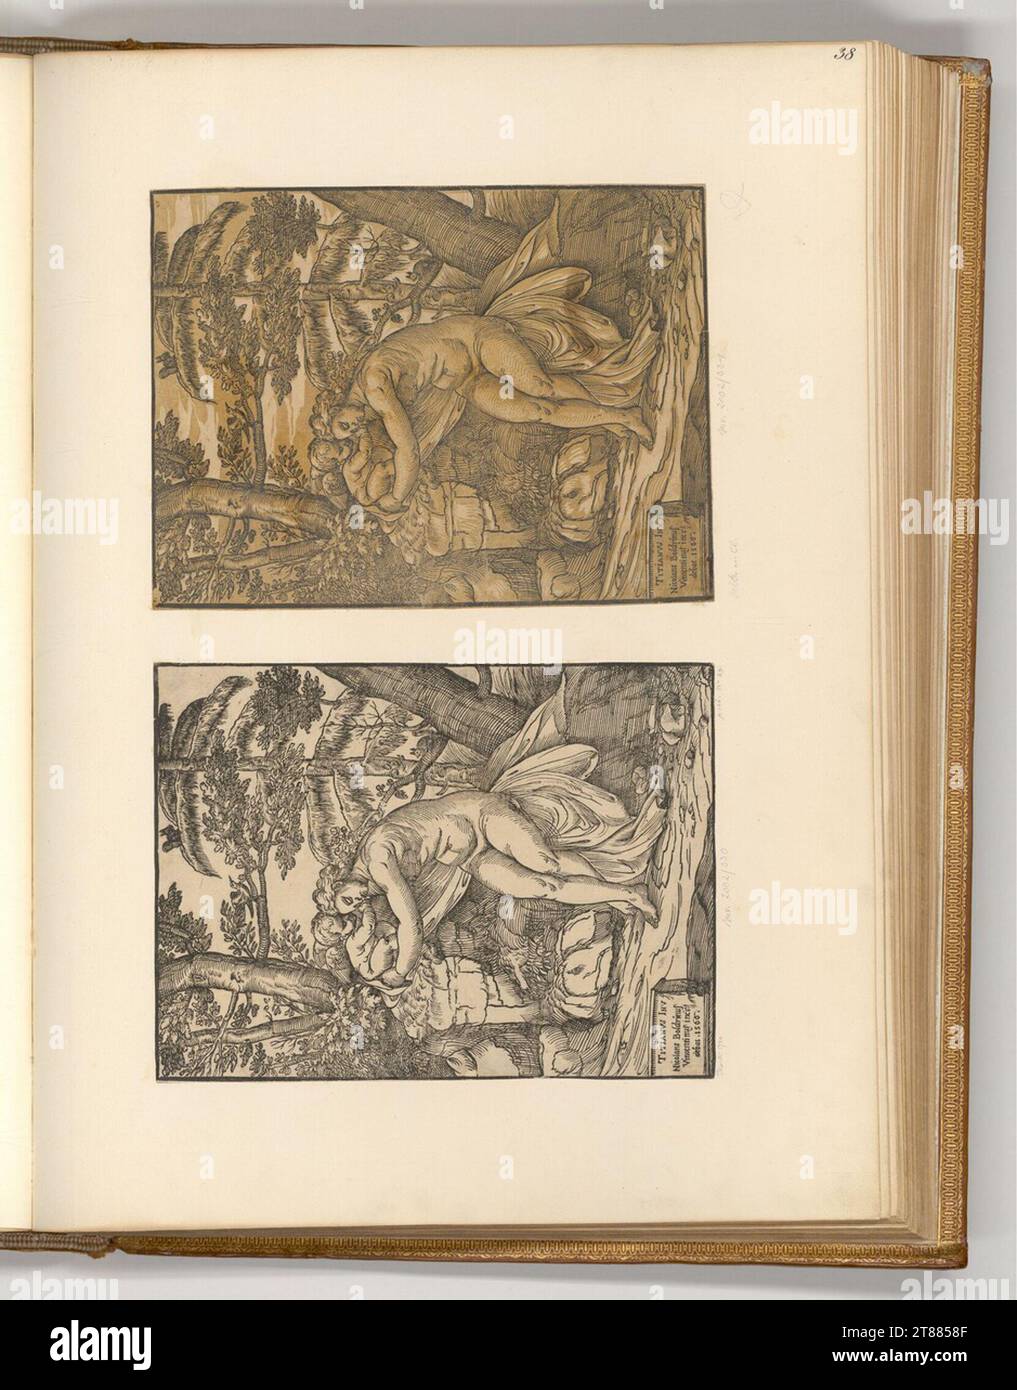 Niccolò Boldrini Vénus et Amor. Gravure sur bois ; clair OBSCUR gravure sur bois de deux plaques 1566, 1566 Banque D'Images